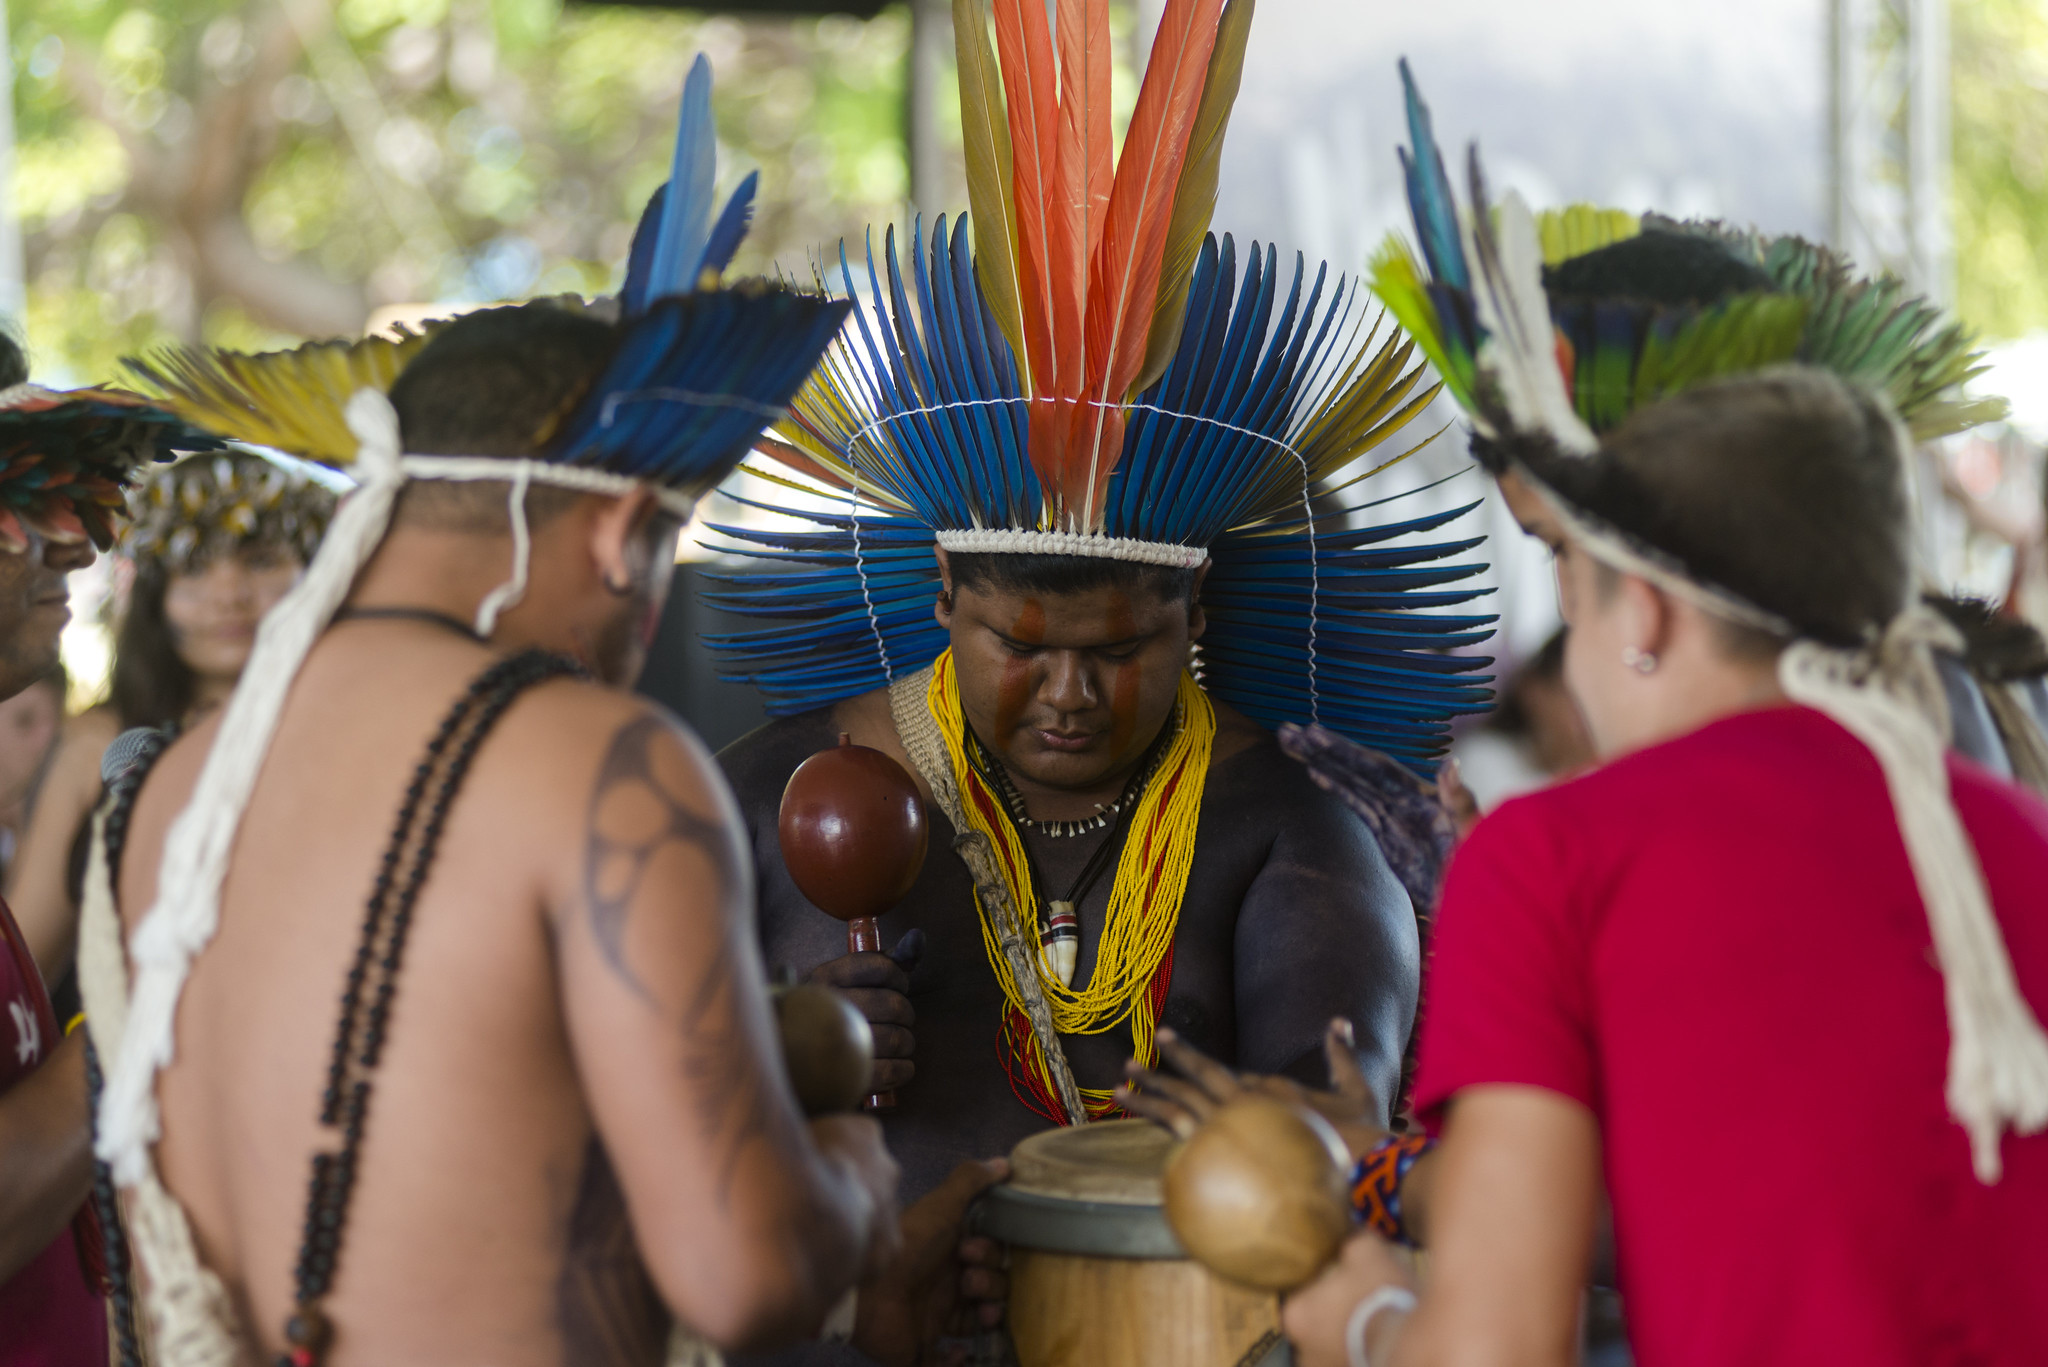 Povos tradicionais do Ceará: na imagem, três homens índigenas utilizam cocares coloridos e batem tambor juntos, em uma roda.